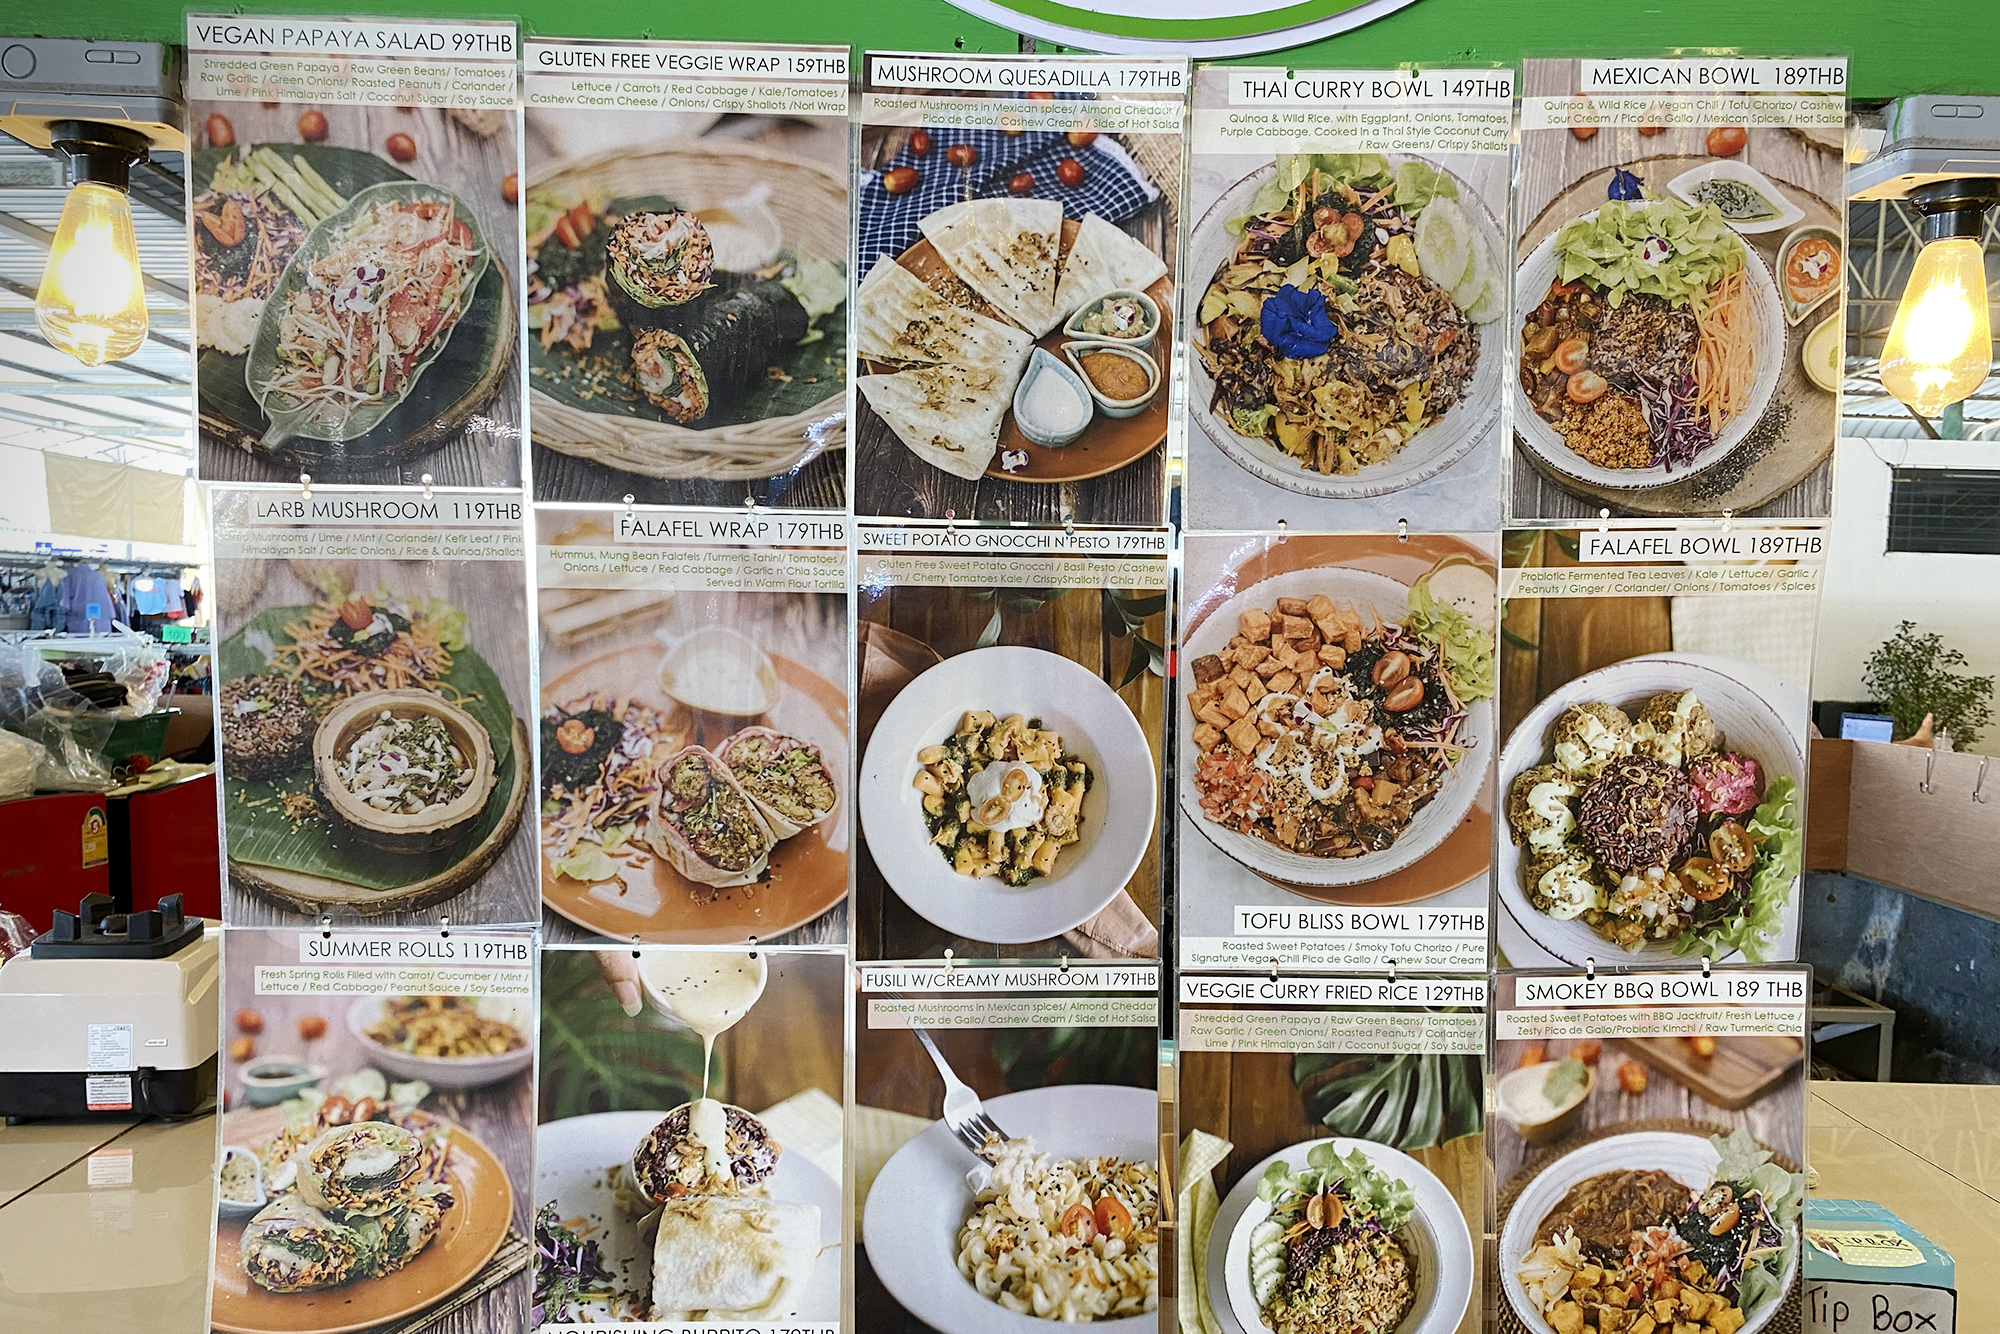 Часть меню Pure Vegan Heaven на фуд⁠-⁠корте в Тонг Сала, где мы часто бывали. На завтрак мне нравилось брать асаи⁠-⁠боул, на обед — фалафель⁠-⁠боул